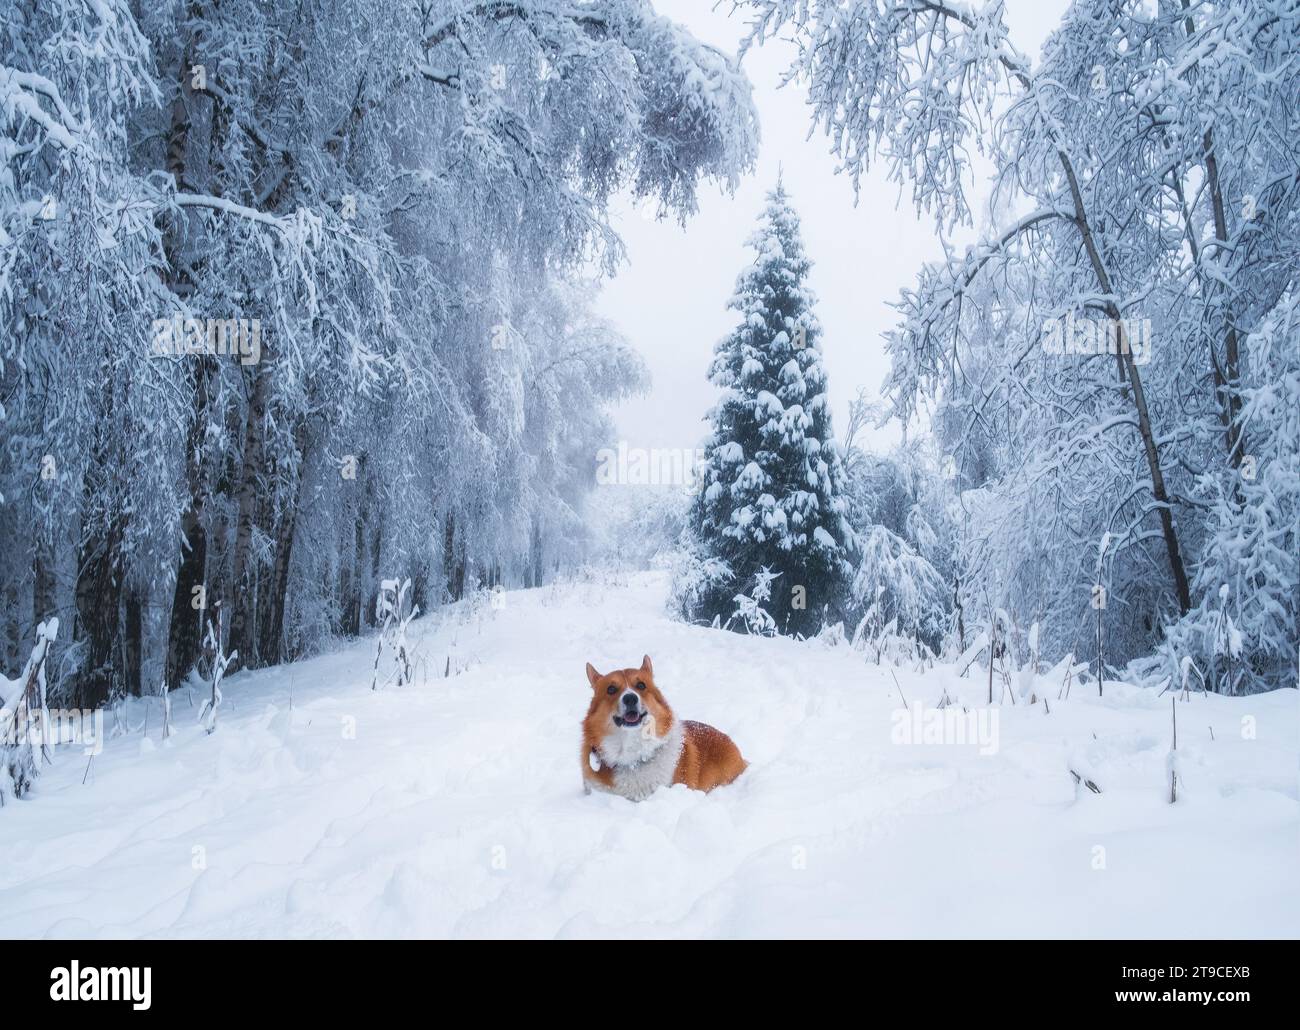 carino cucciolo gallese pembroke, corgi rossi, che cammina lungo un sentiero innevato nella gelida foresta di betulle d'inverno Foto Stock